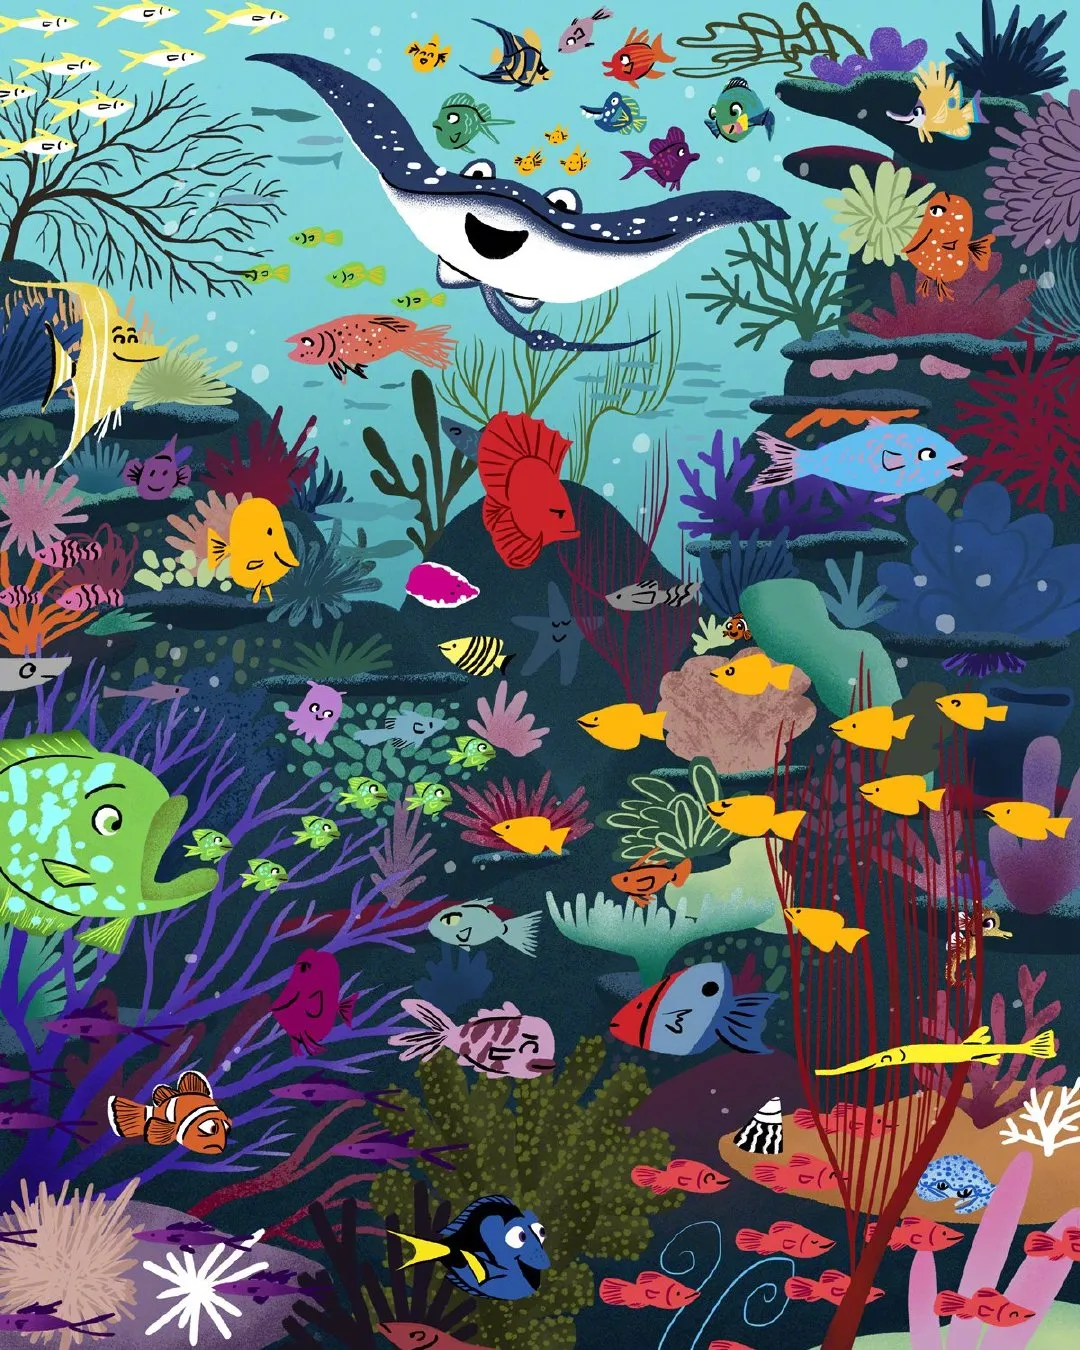 Pixar shares painter Daniel Gray-Barnett's 'Finding Nemo' art painting | FMV6